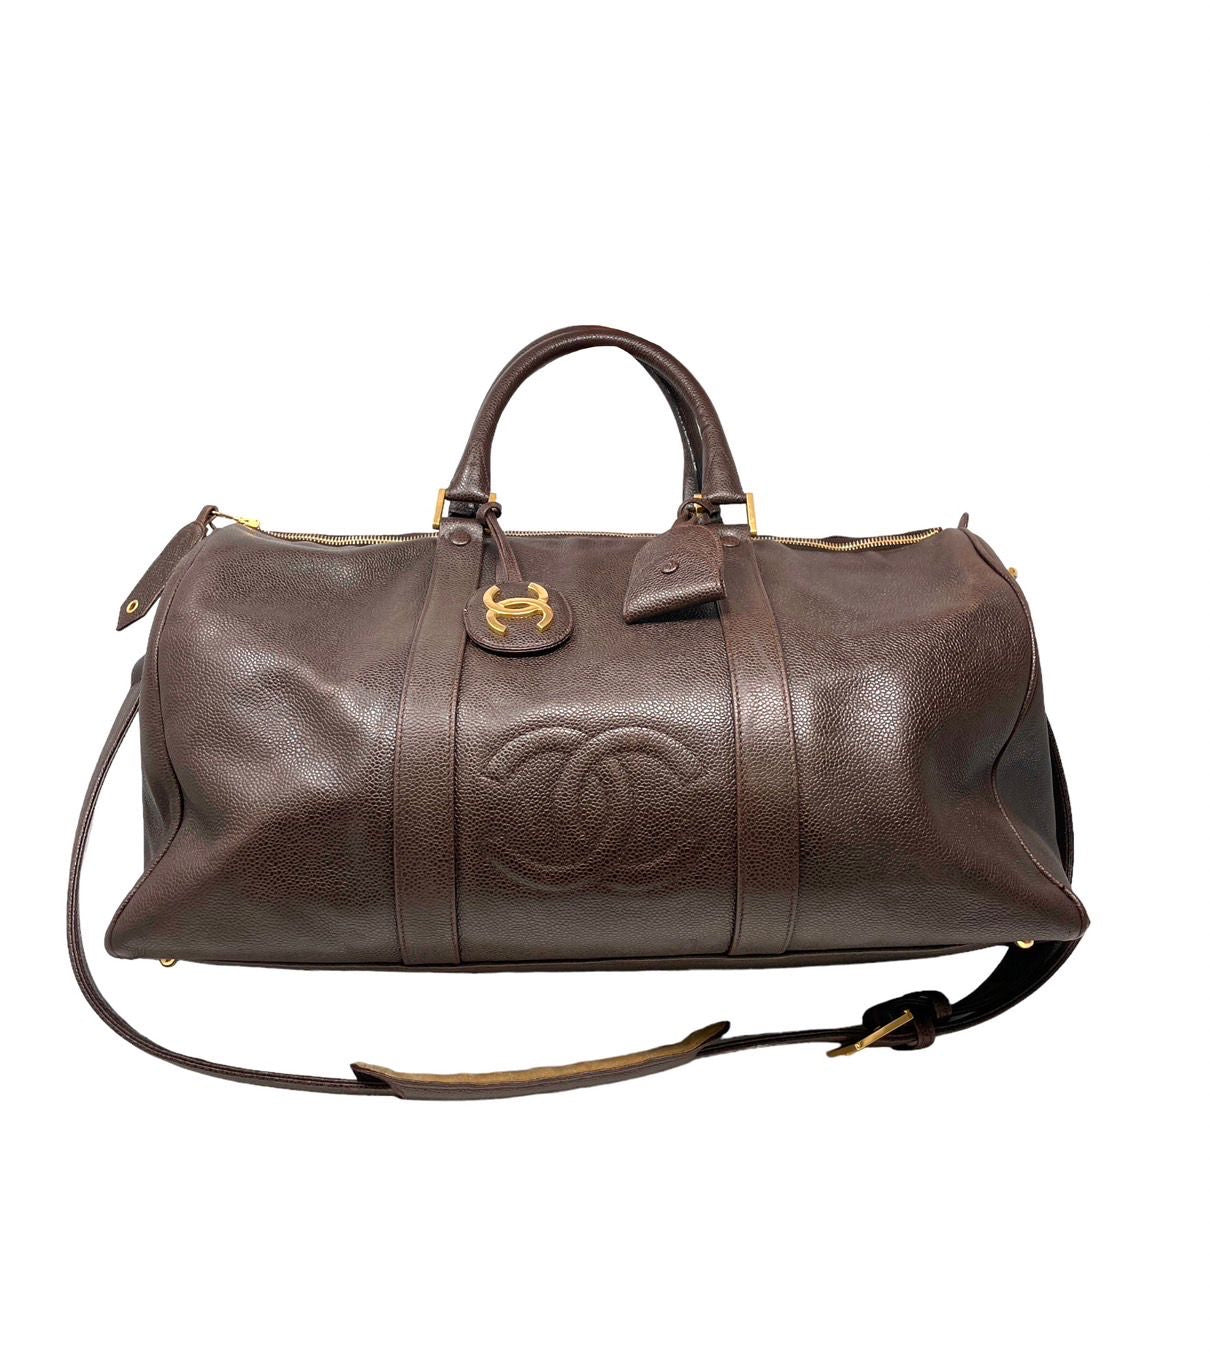 Chanel Boston Bag